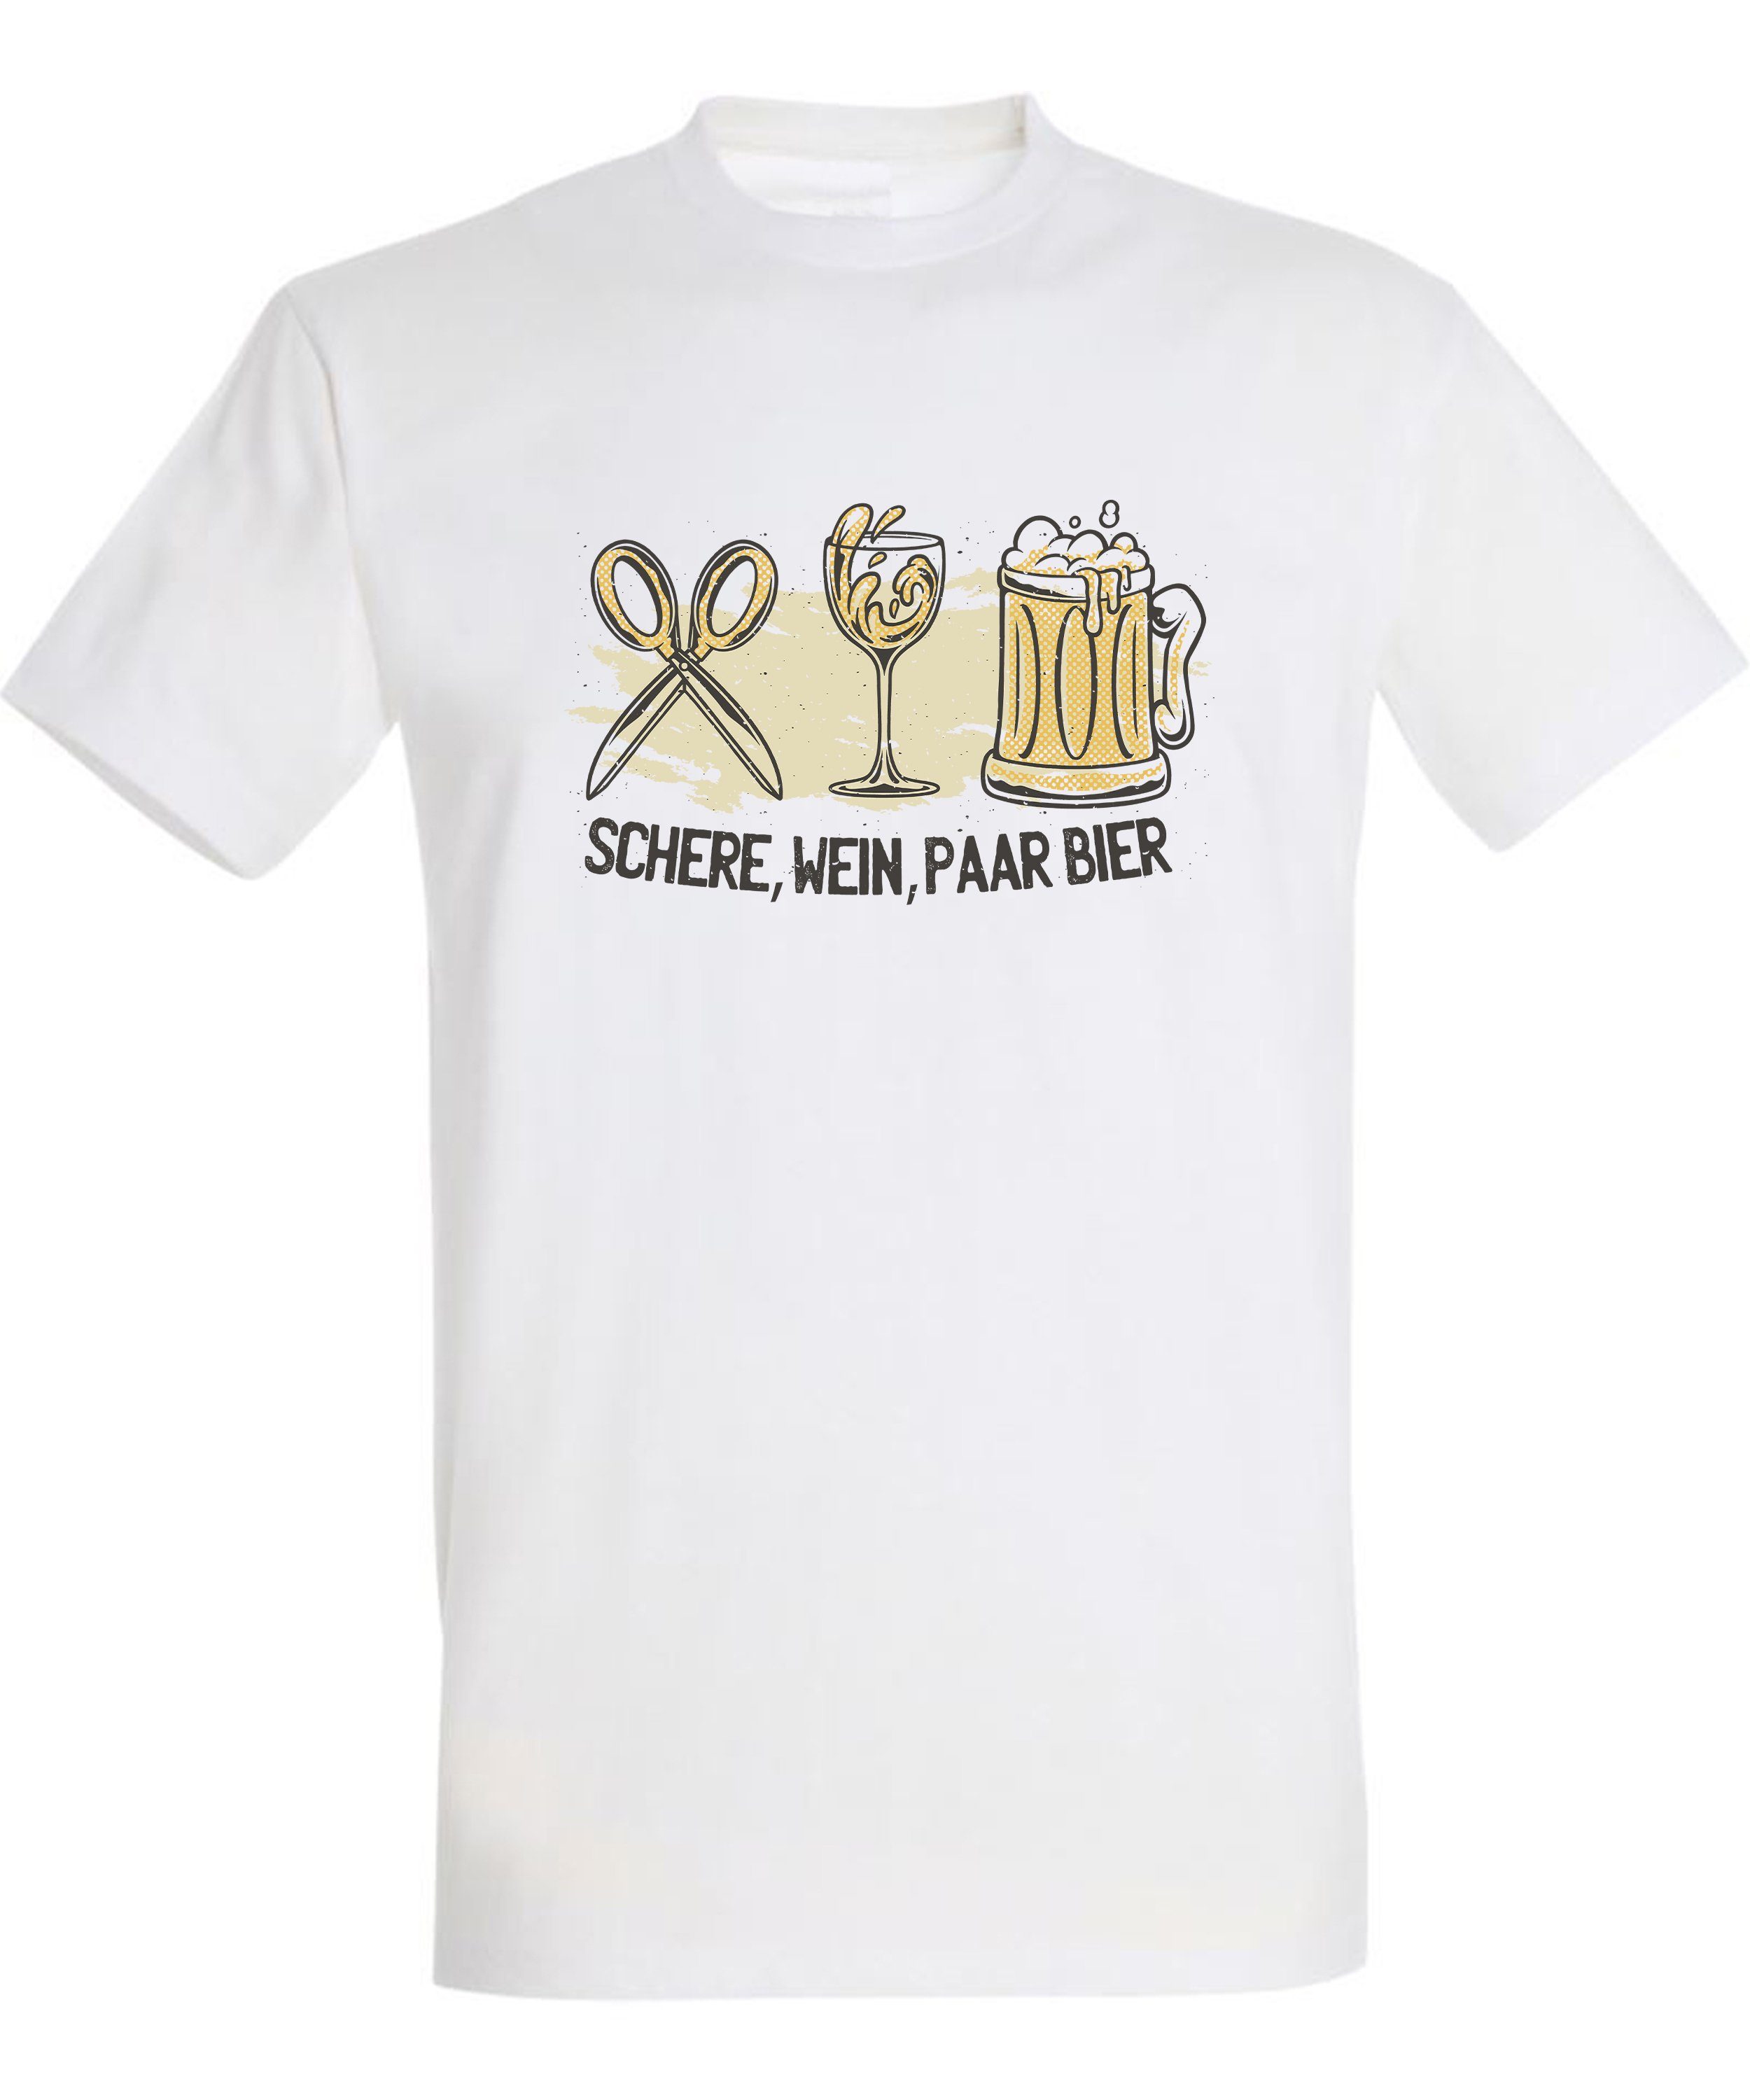 MyDesign24 Shirt mit Herren Regular T-Shirt Sprüche Wein, i321 Schere, Trinkshirt Bier Baumwollshirt Fit, Aufdruck weiss Paar -